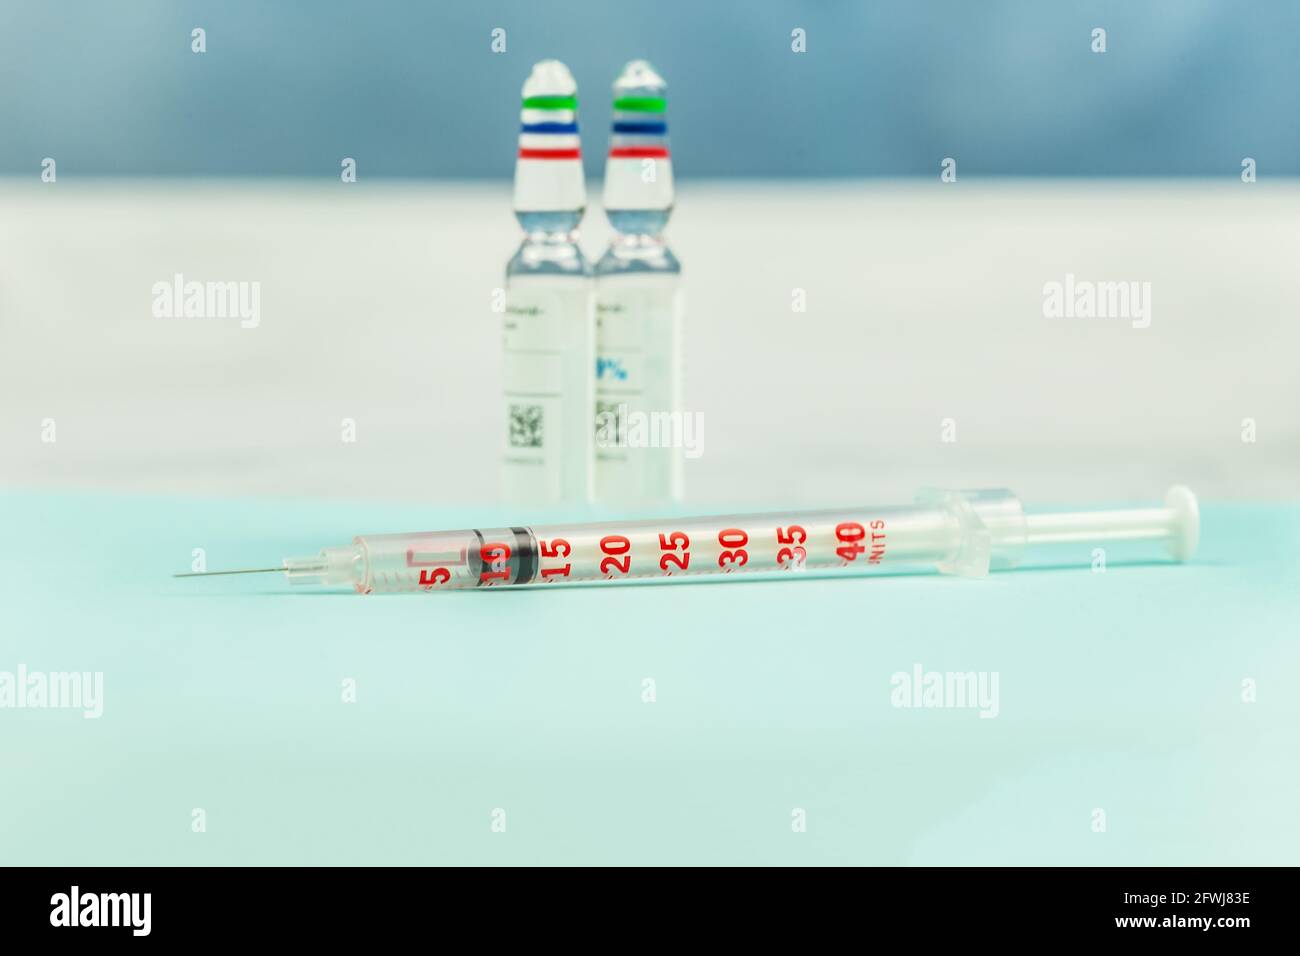 Eine Spritze vor zwei zu injizierenden pharmazeutischen Phals Ein Medikament Stockfoto